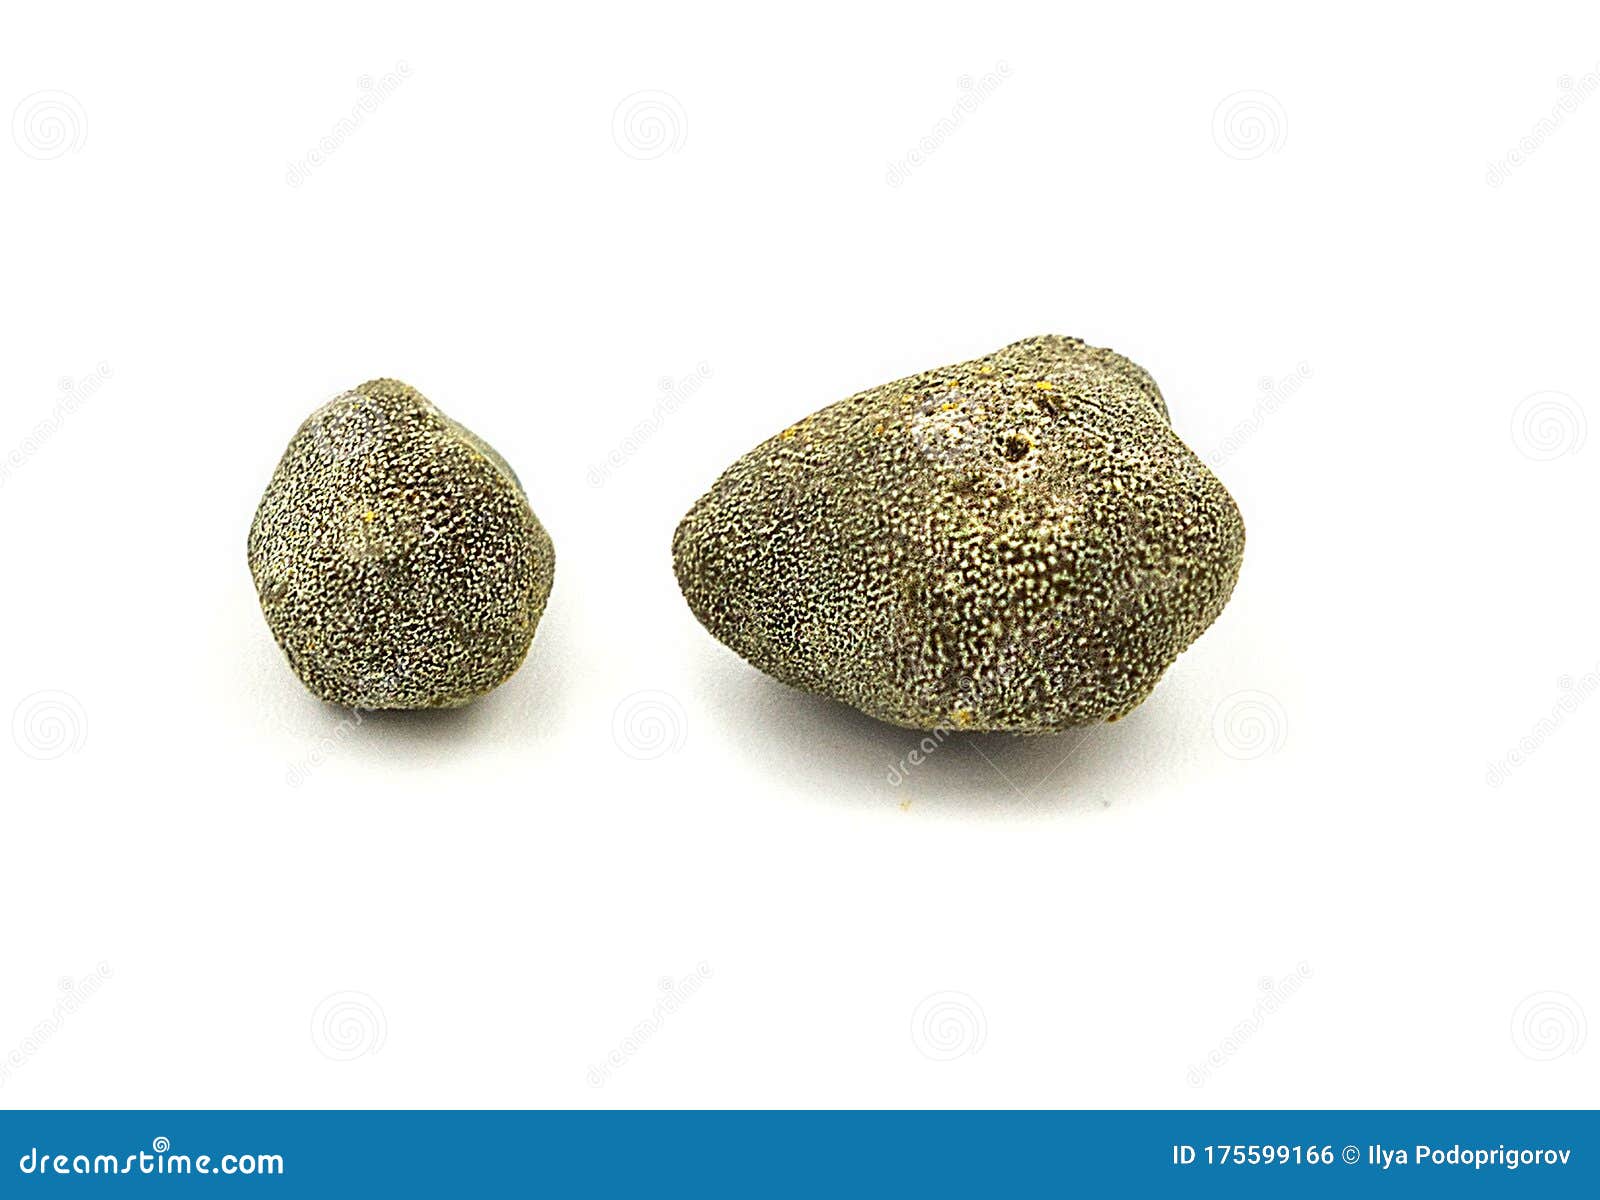 Камни В Желчном Пузыре Фото